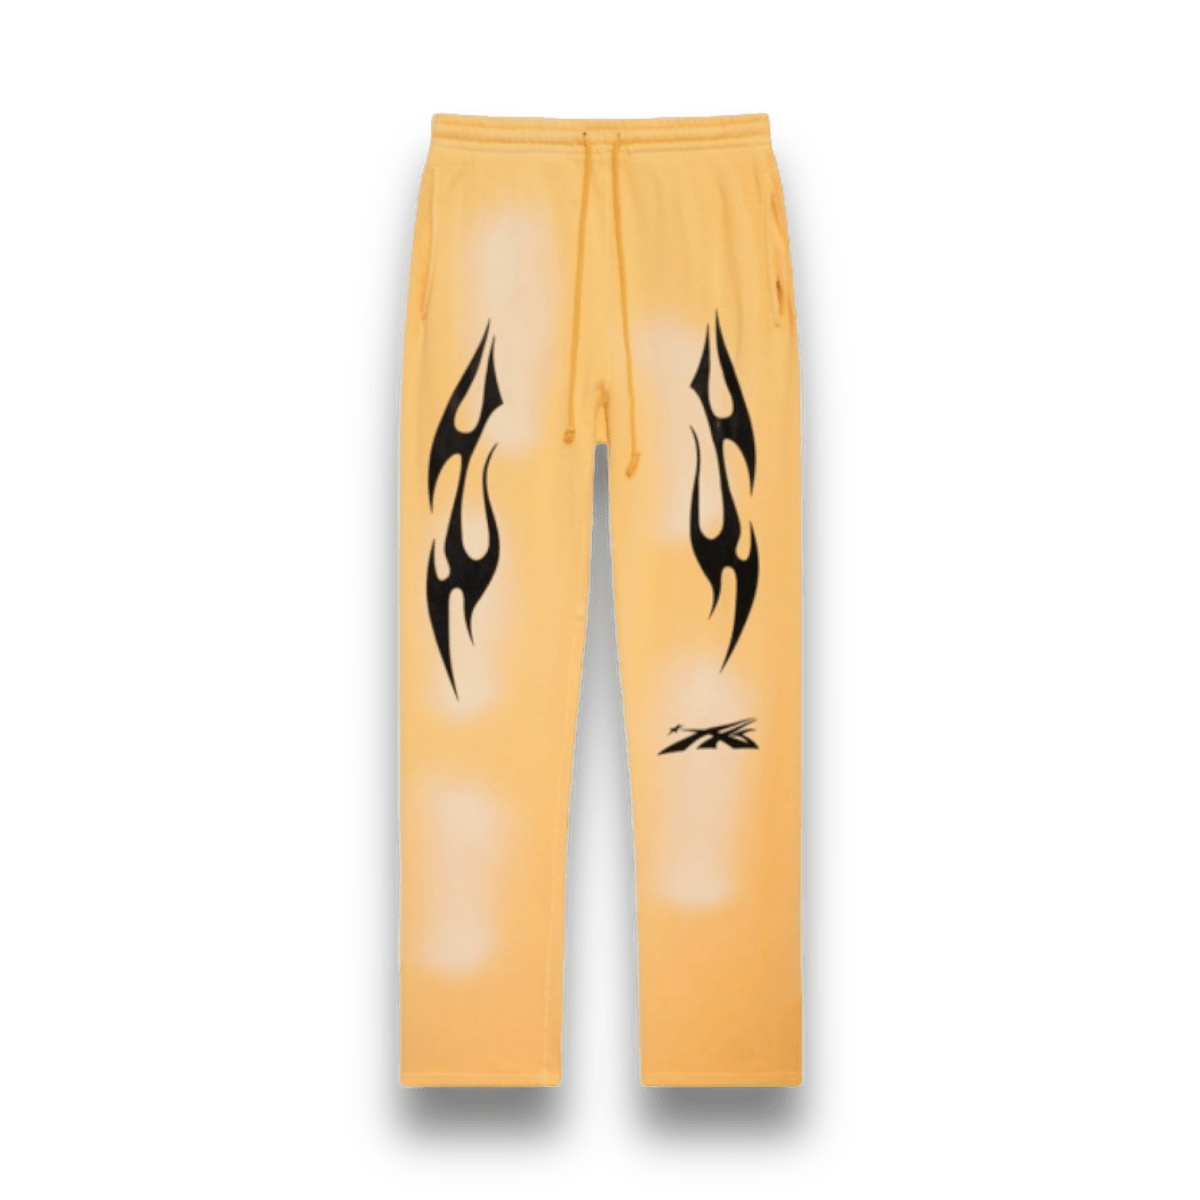 Hellstar Sports Sweatpants - Yellow - Bottoms - Jawns on Fire Sneakers & Streetwear